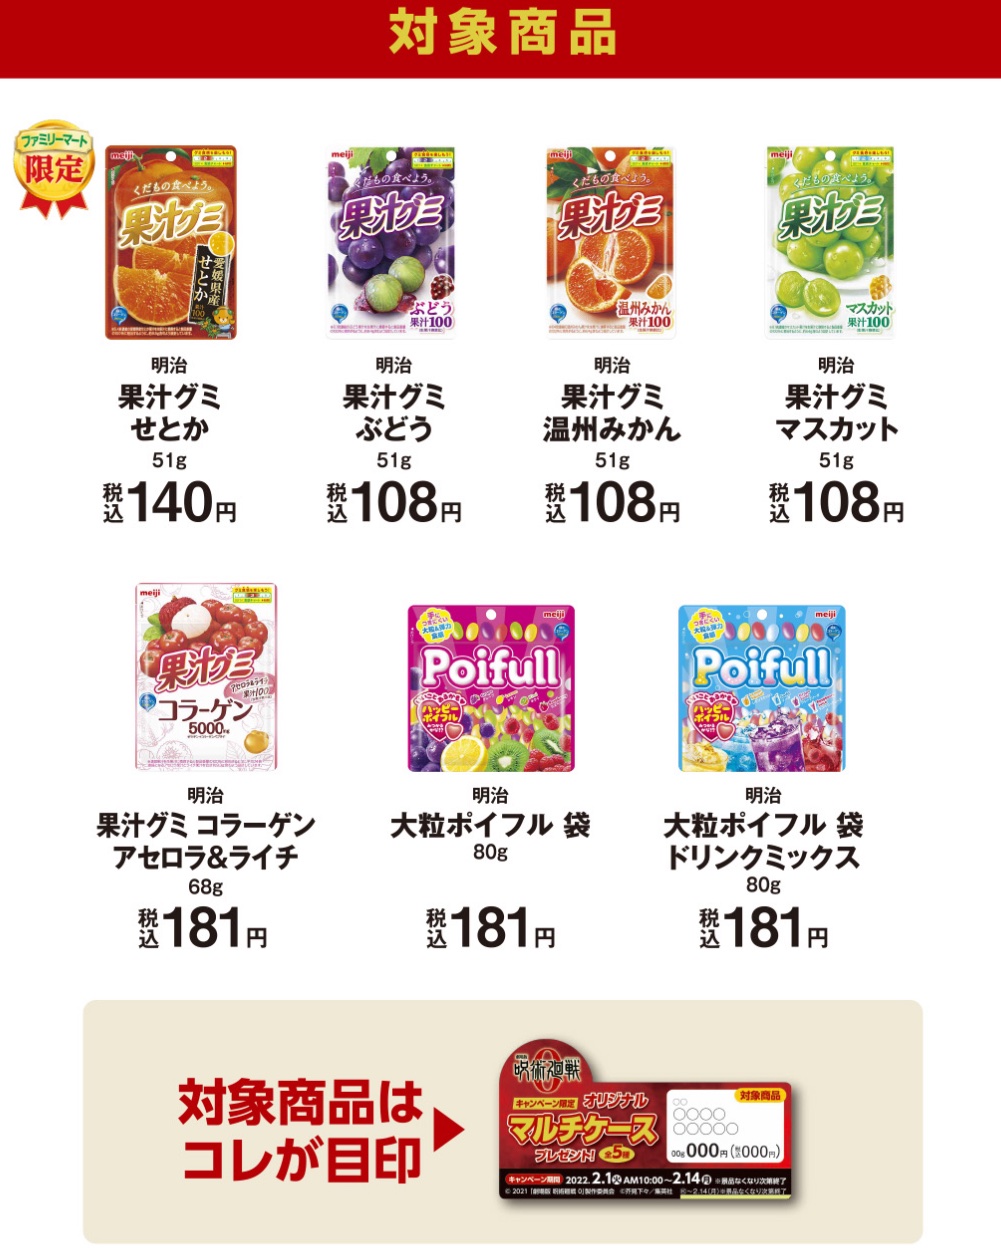 「ファミリーマート」×「劇場版 呪術廻戦 0」応援キャンペーン 対象商品